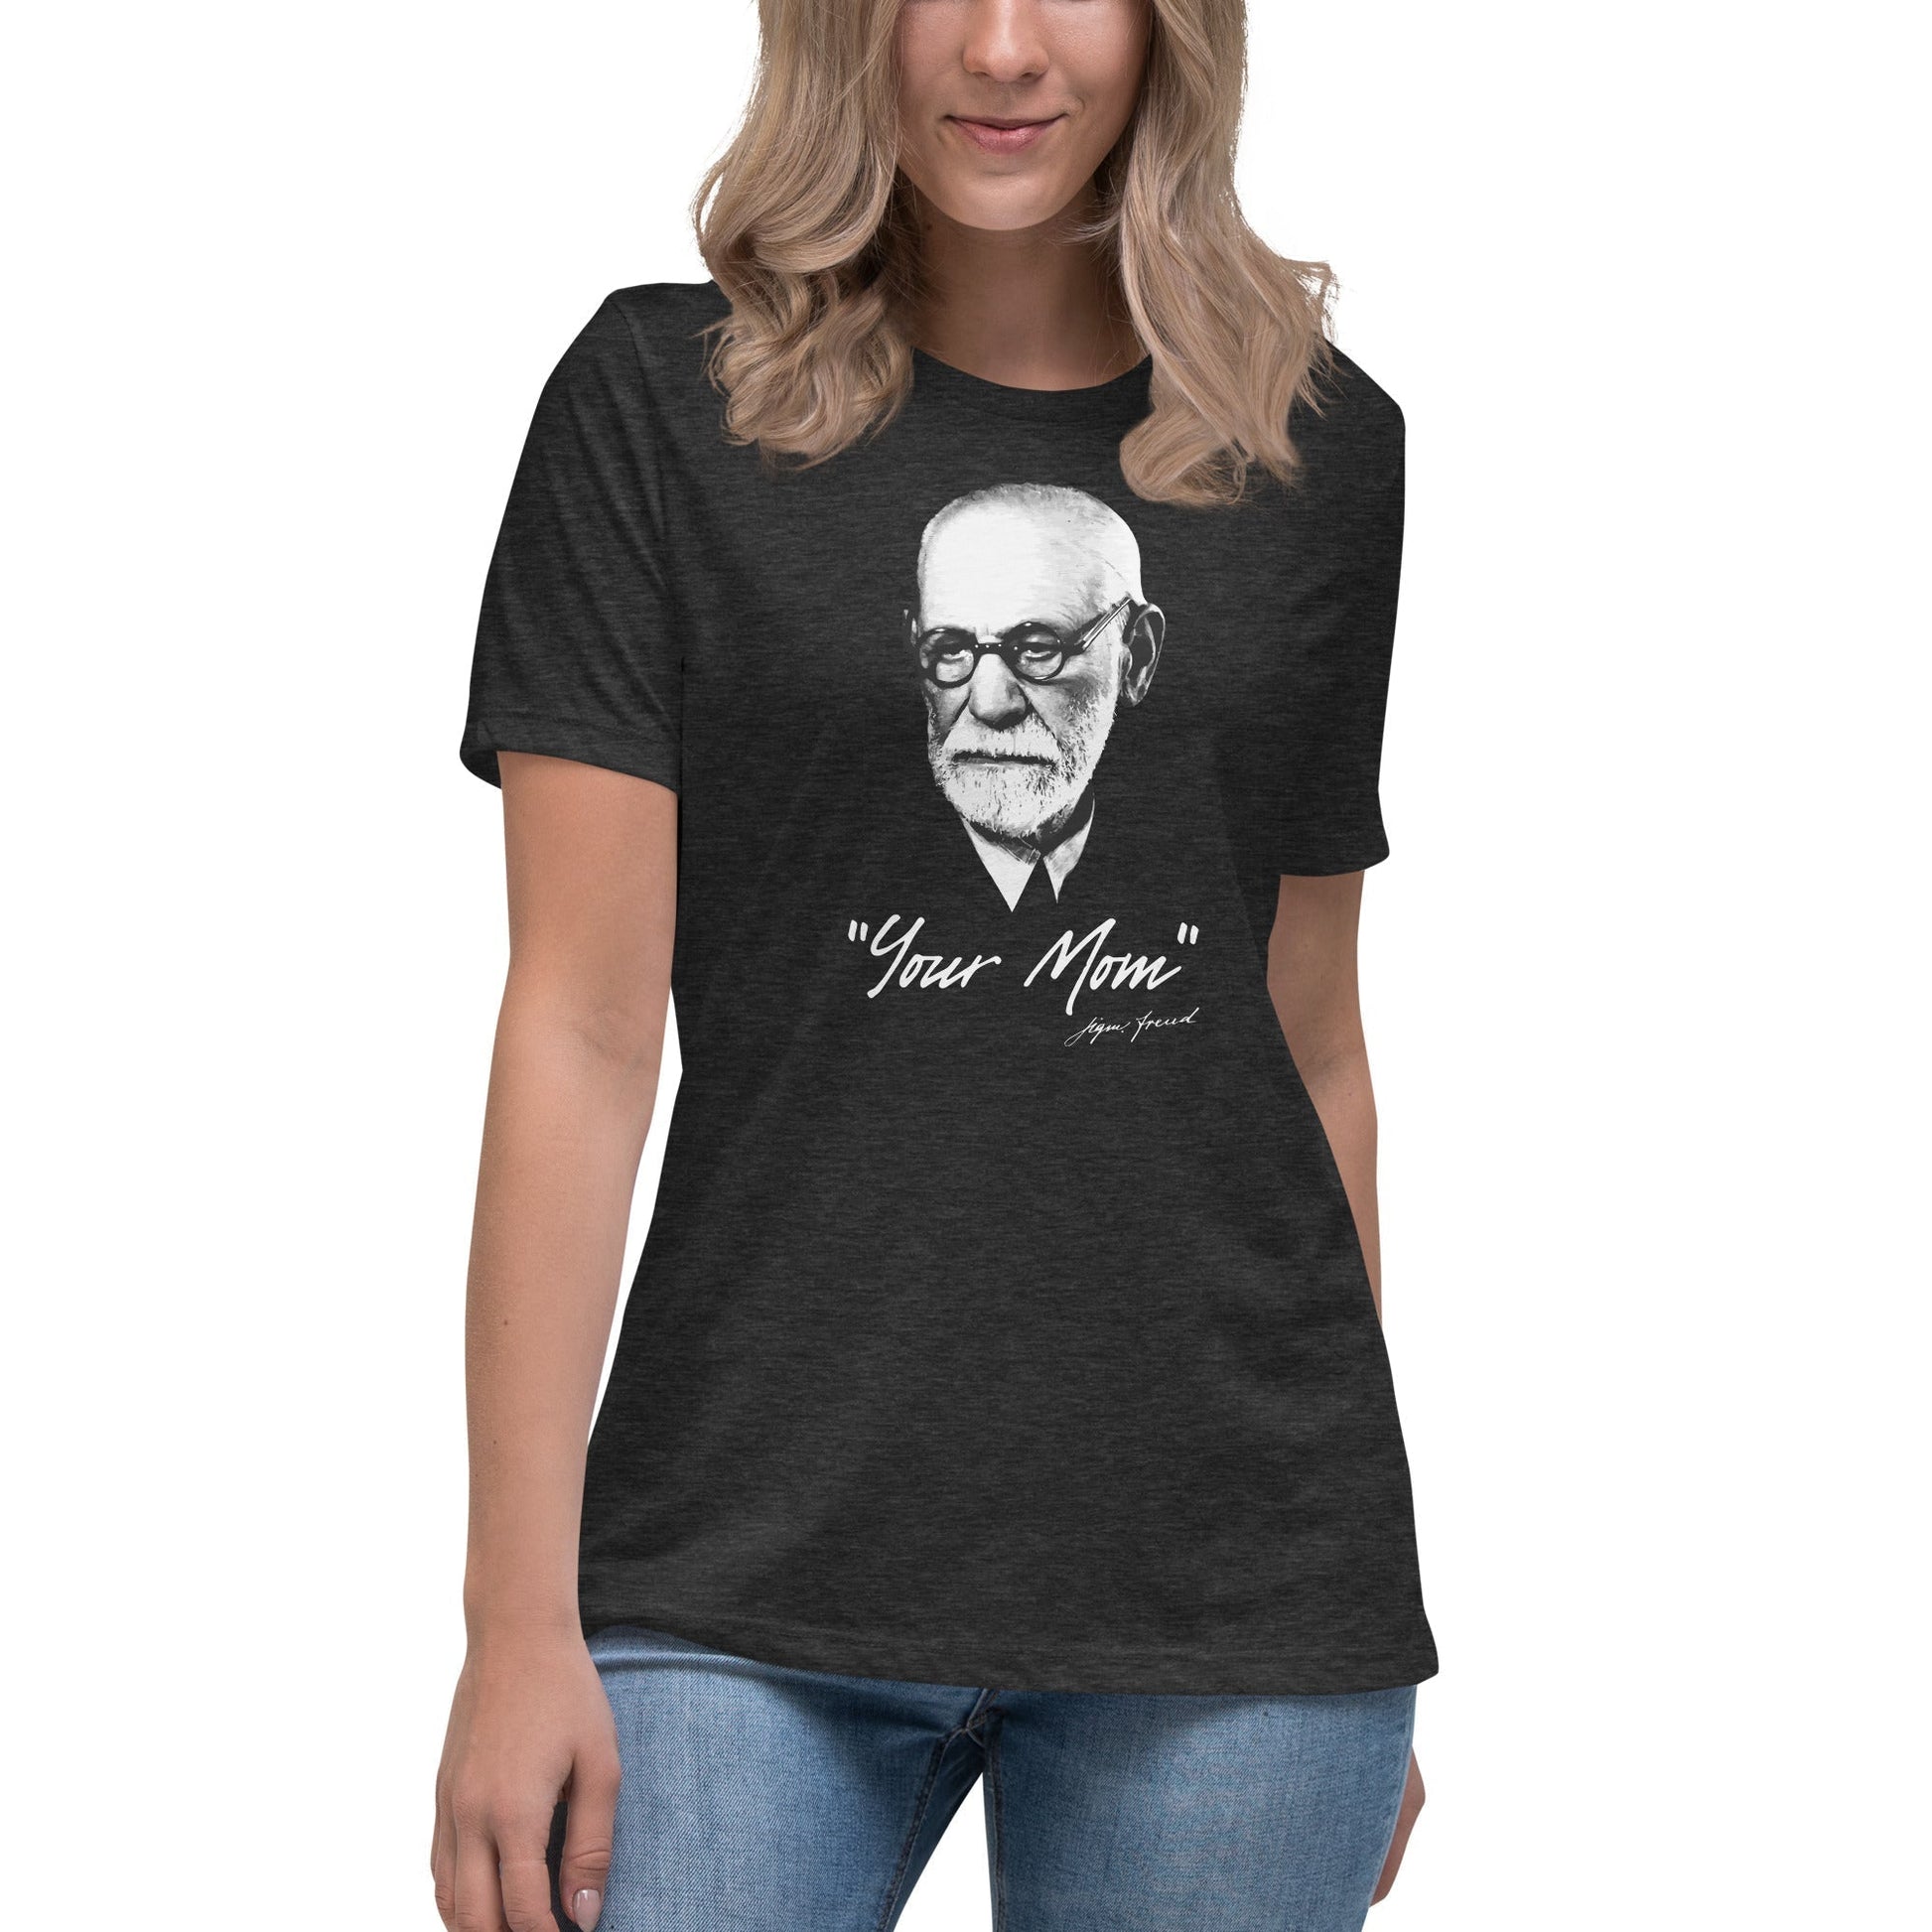 Sigmund Freud - Your Mom - Women's T-Shirt